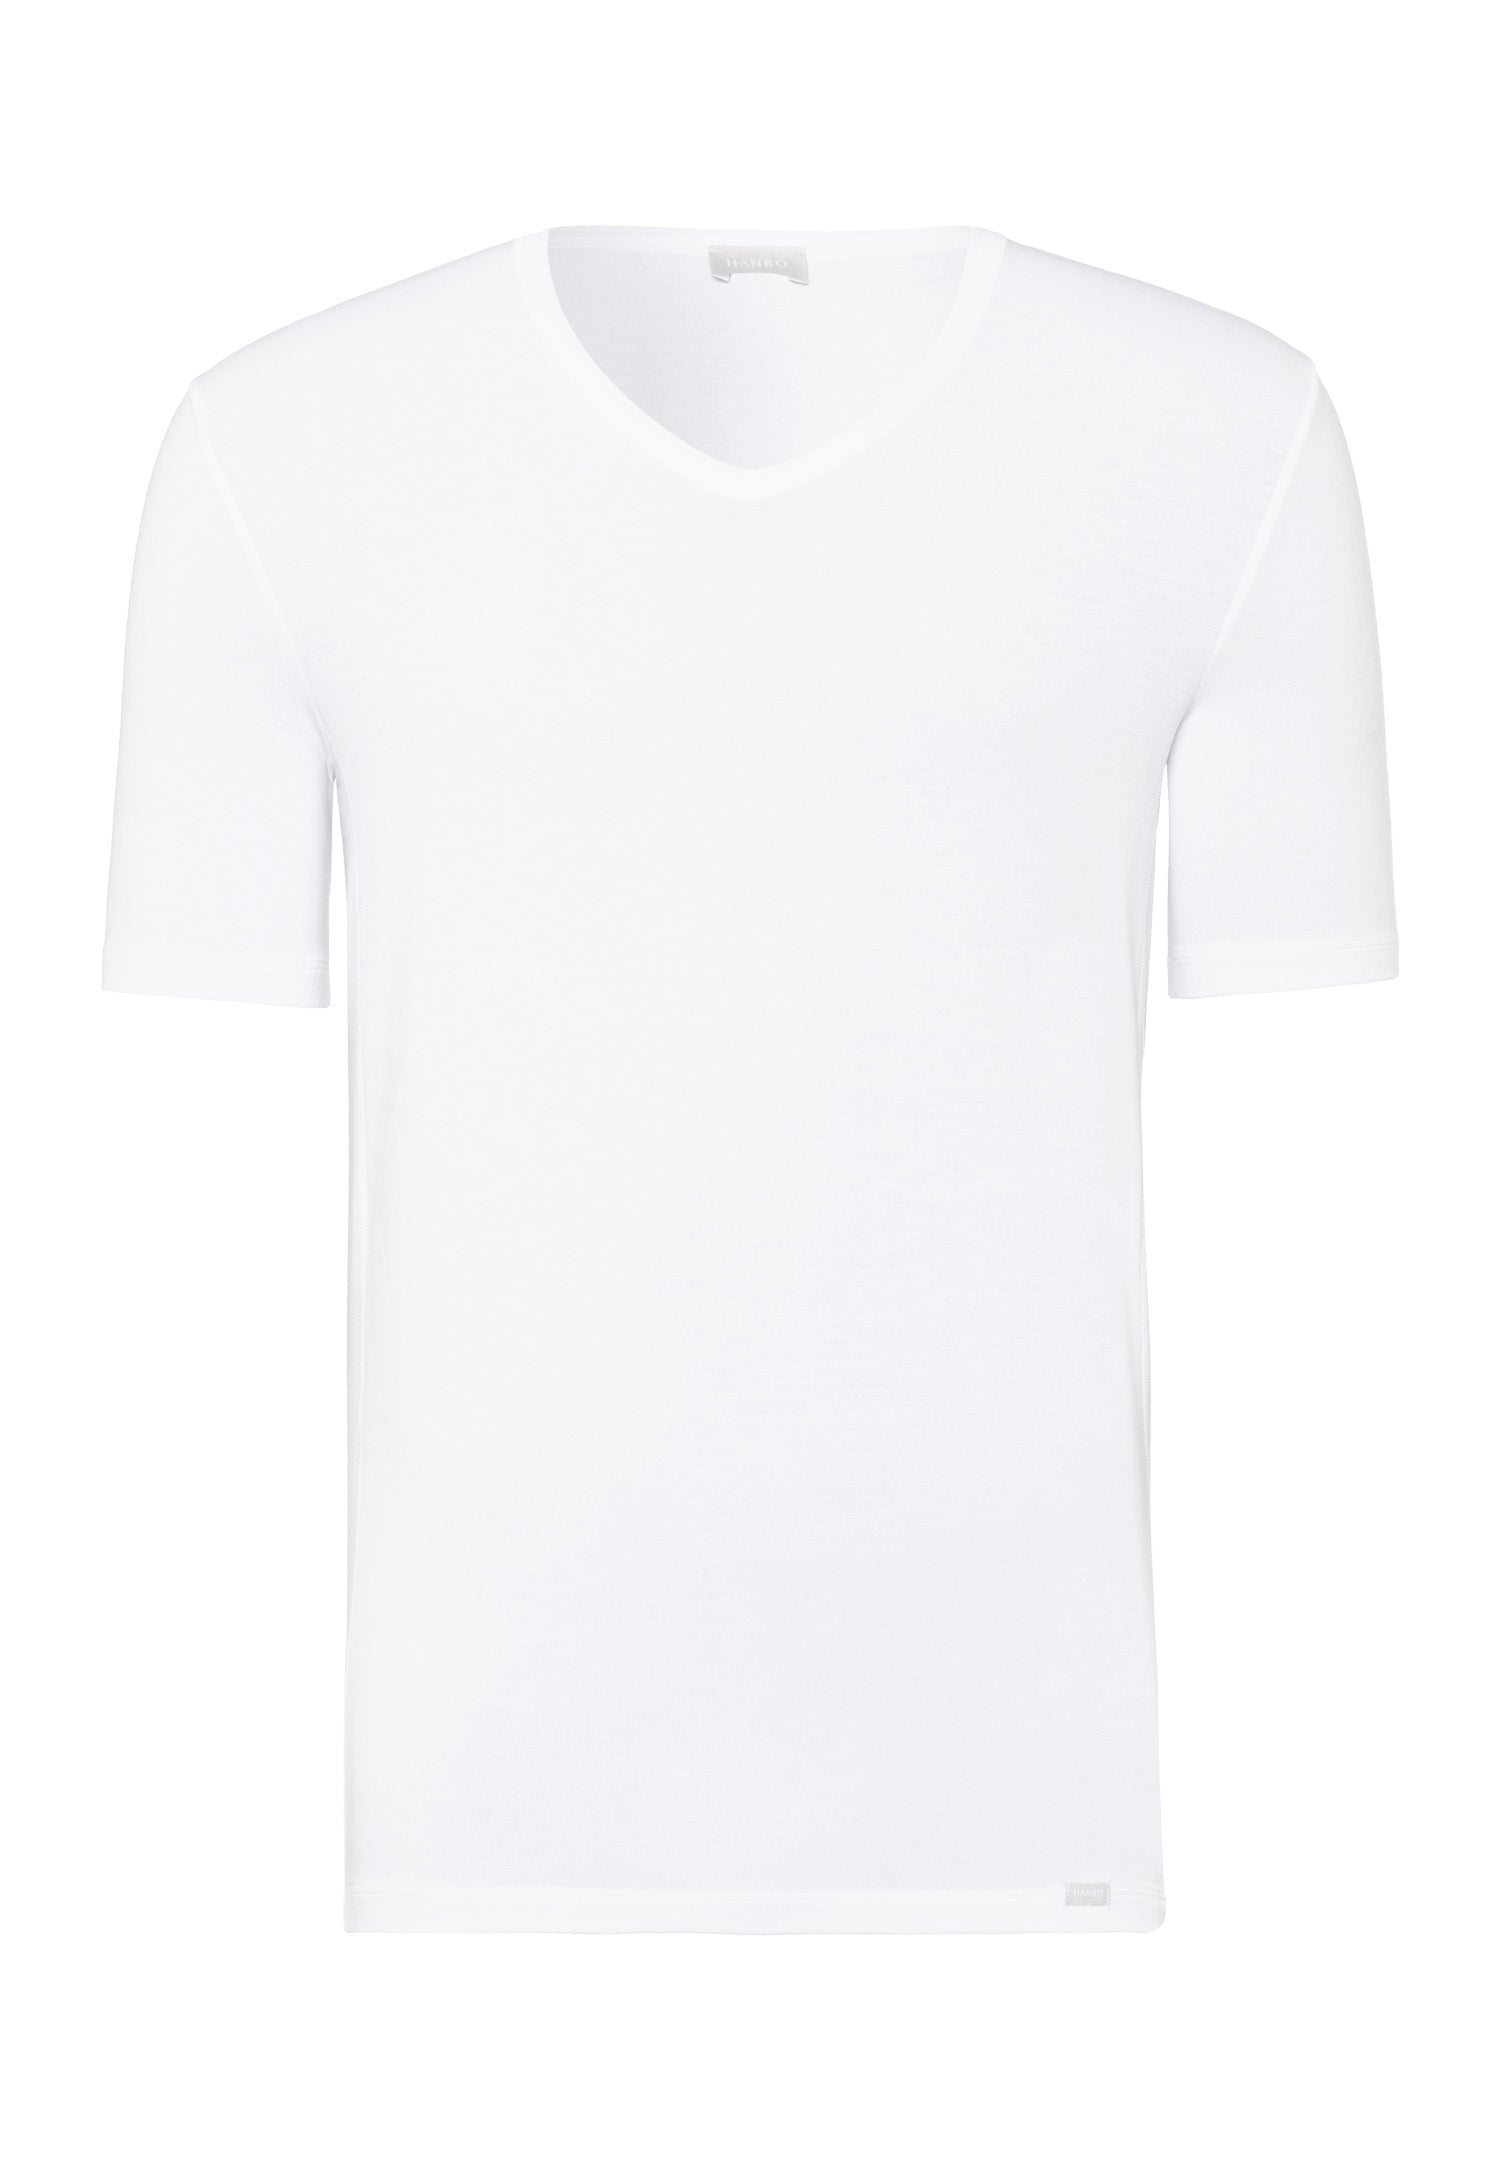 73185 Natural Function Short Sleeve V-Neck Shirt - 101 White